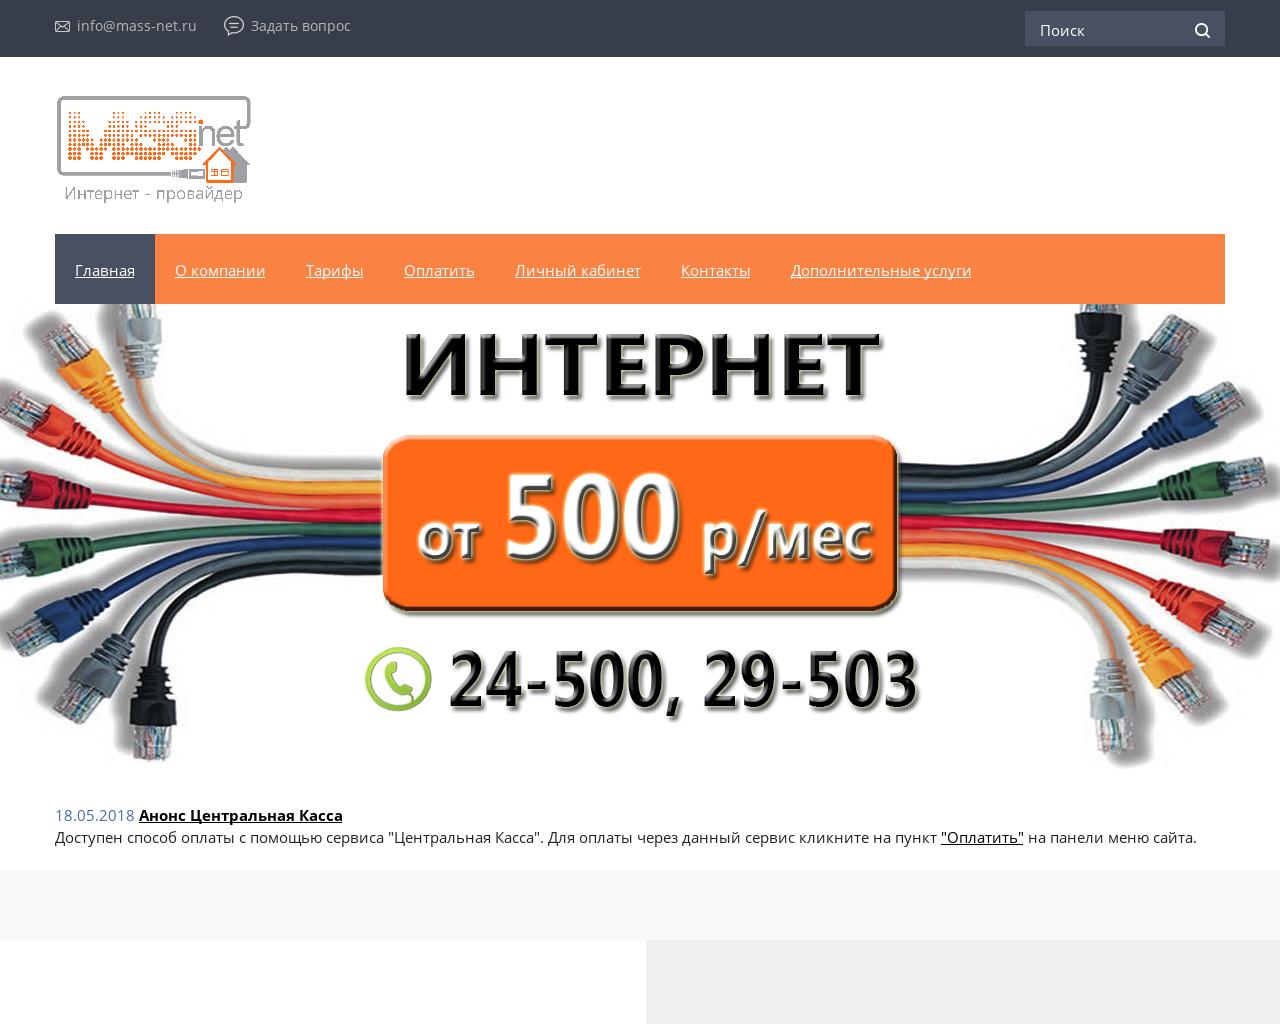 Изображение сайта mass-net.ru в разрешении 1280x1024